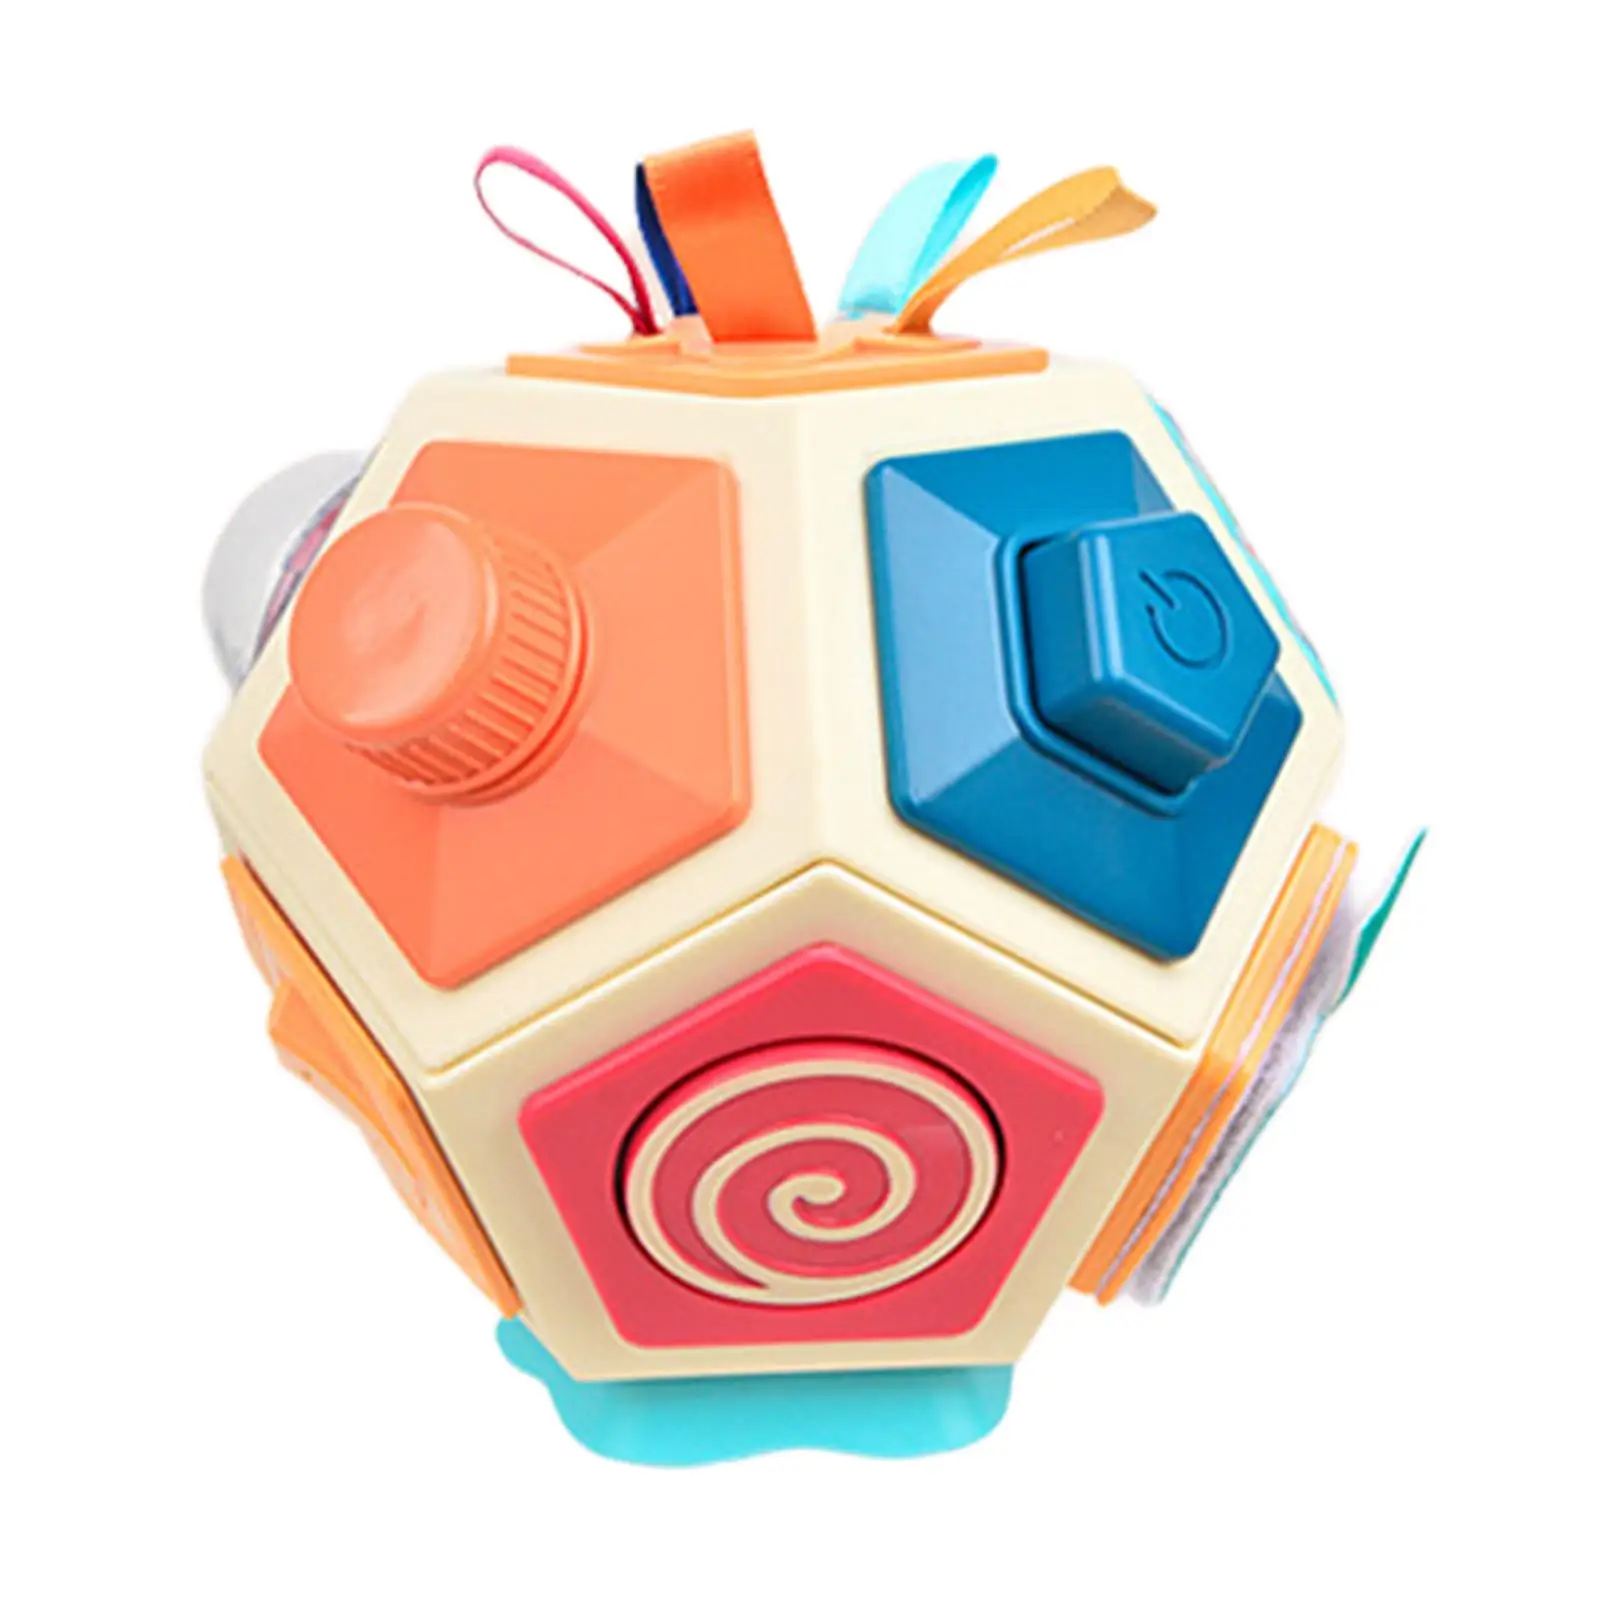 

Детский занятый мяч, сенсорная игрушка, игрушки для младенцев, обучение распознаванию цвета для ребенка